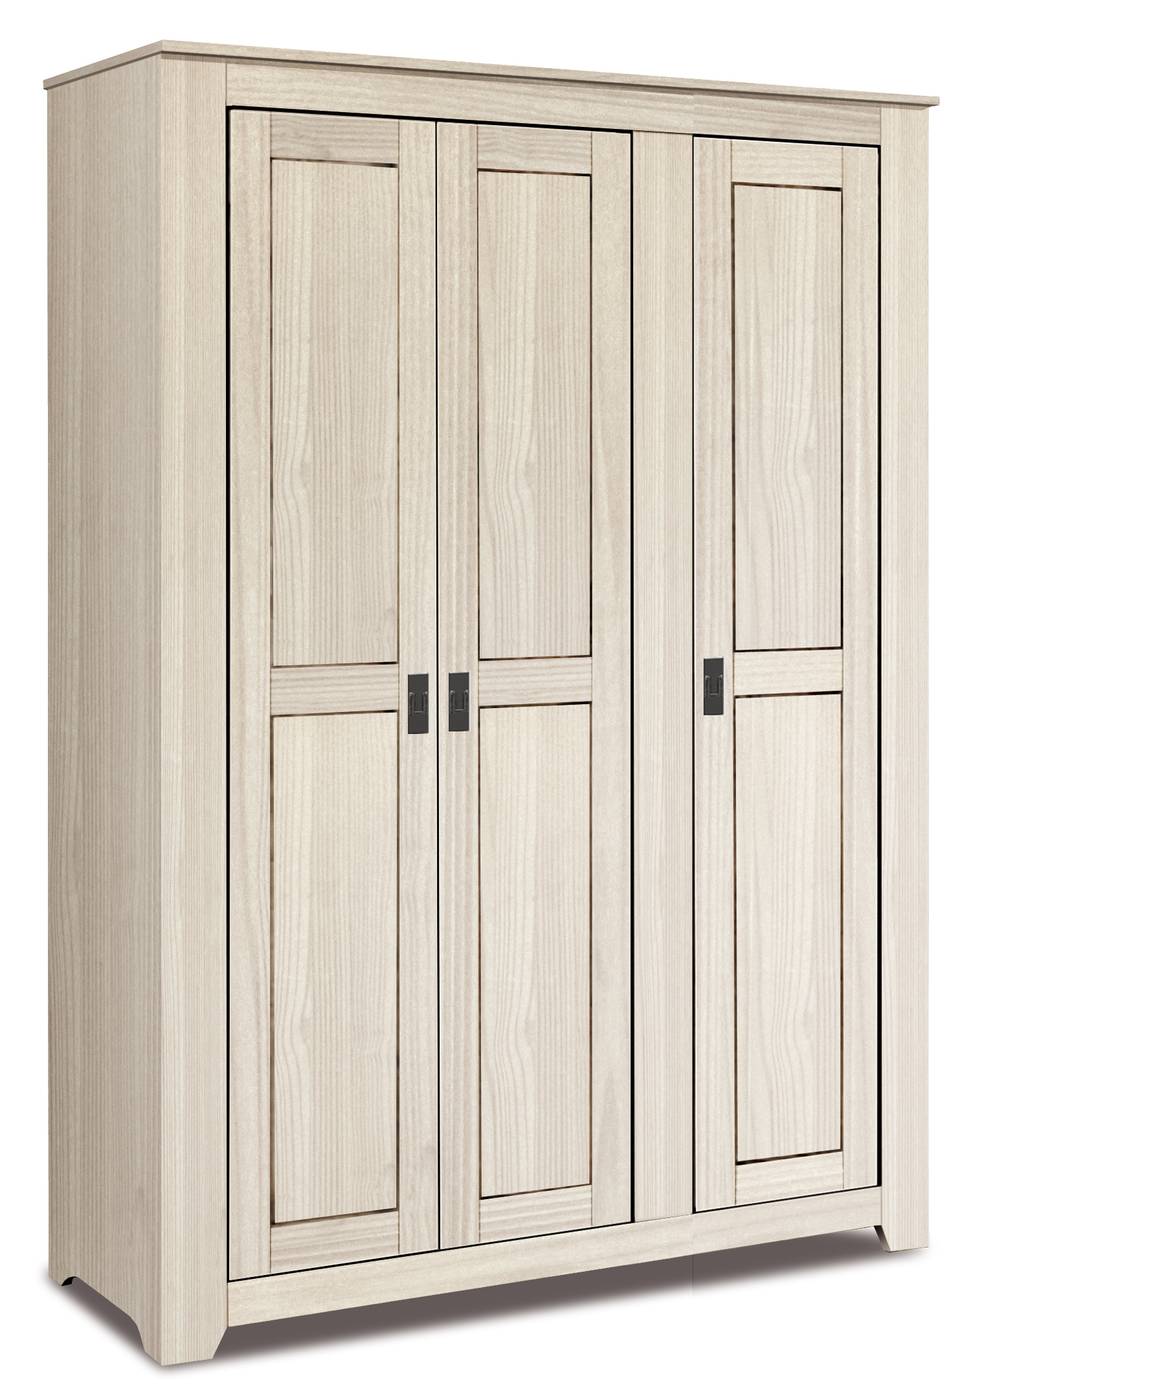 Armario de madera maciza de 3 puertas color blanco lavado